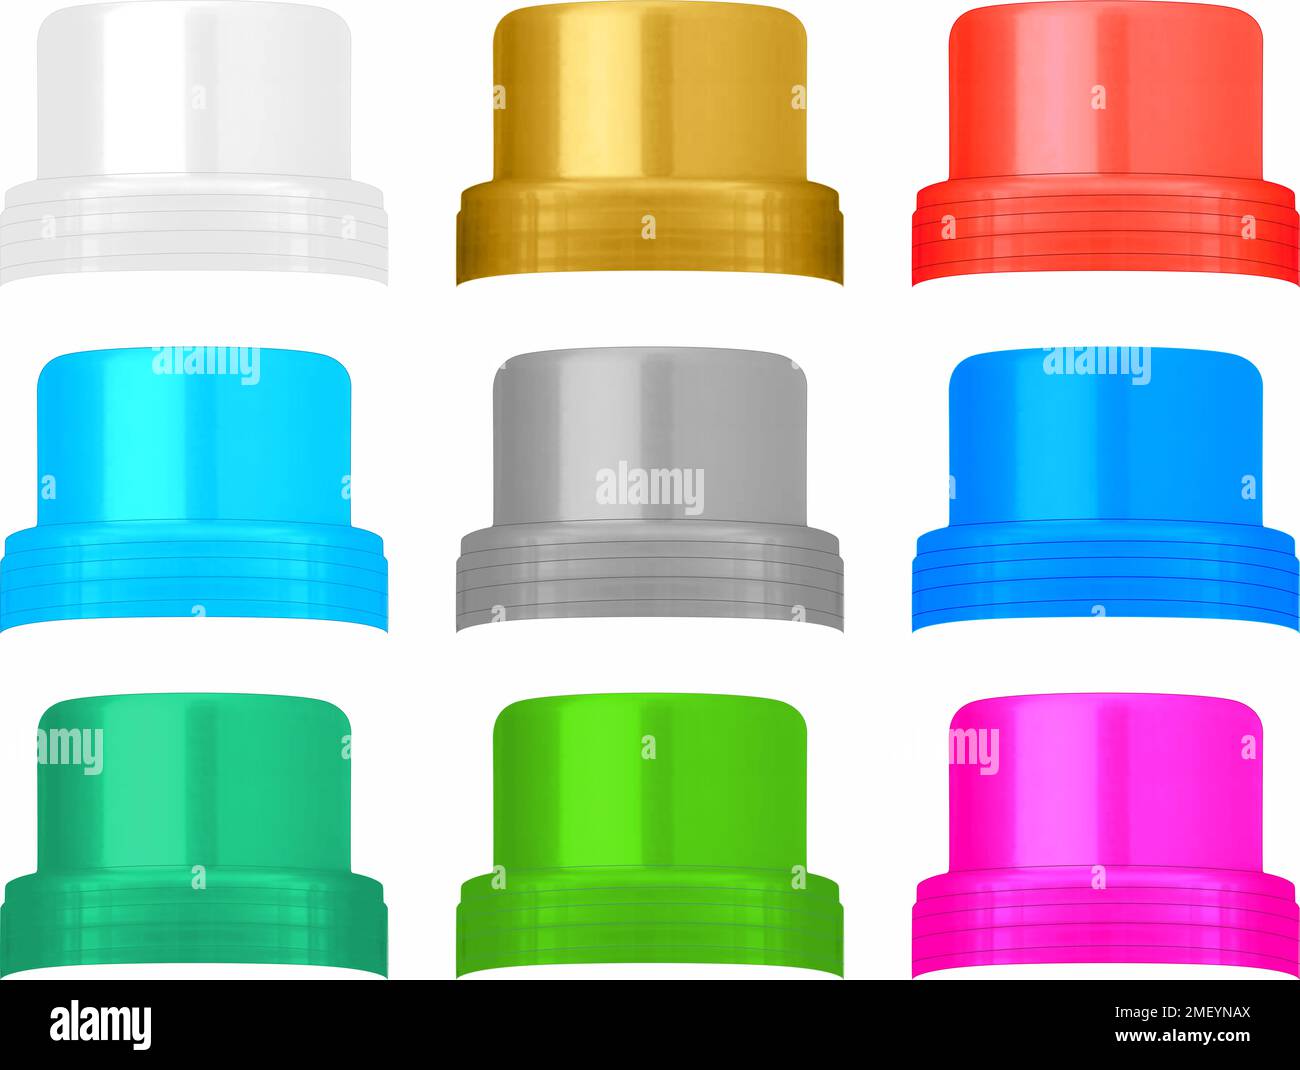 ilustración de tapones para limpiadores o detergentes aislados Stock Photo